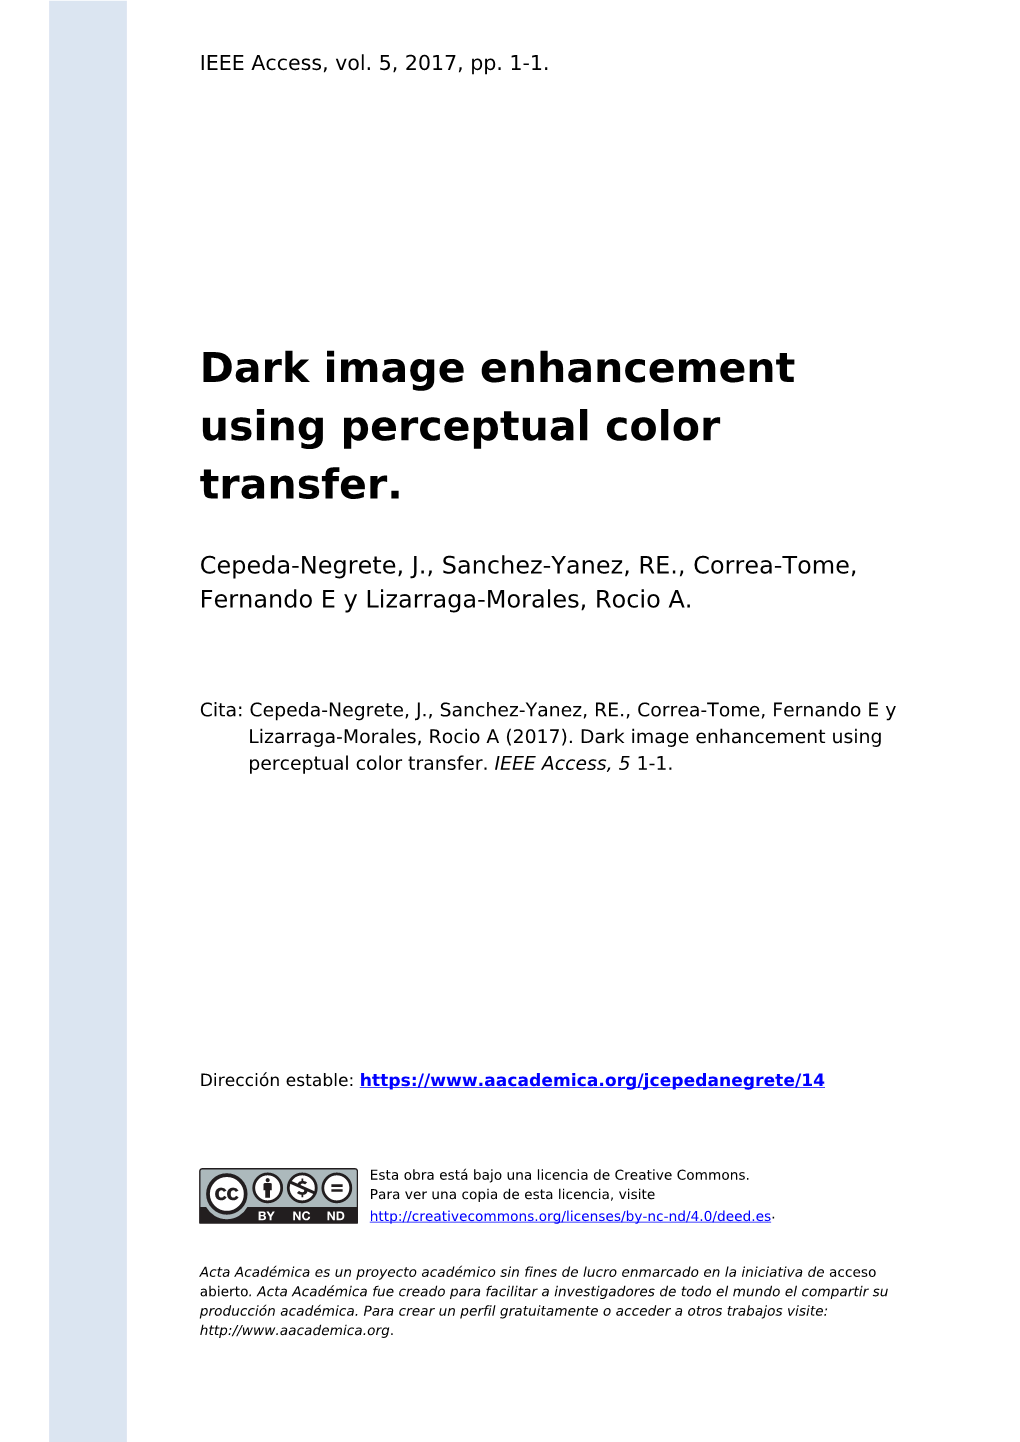 Dark Image Enhancement Using Perceptual Color Transfer